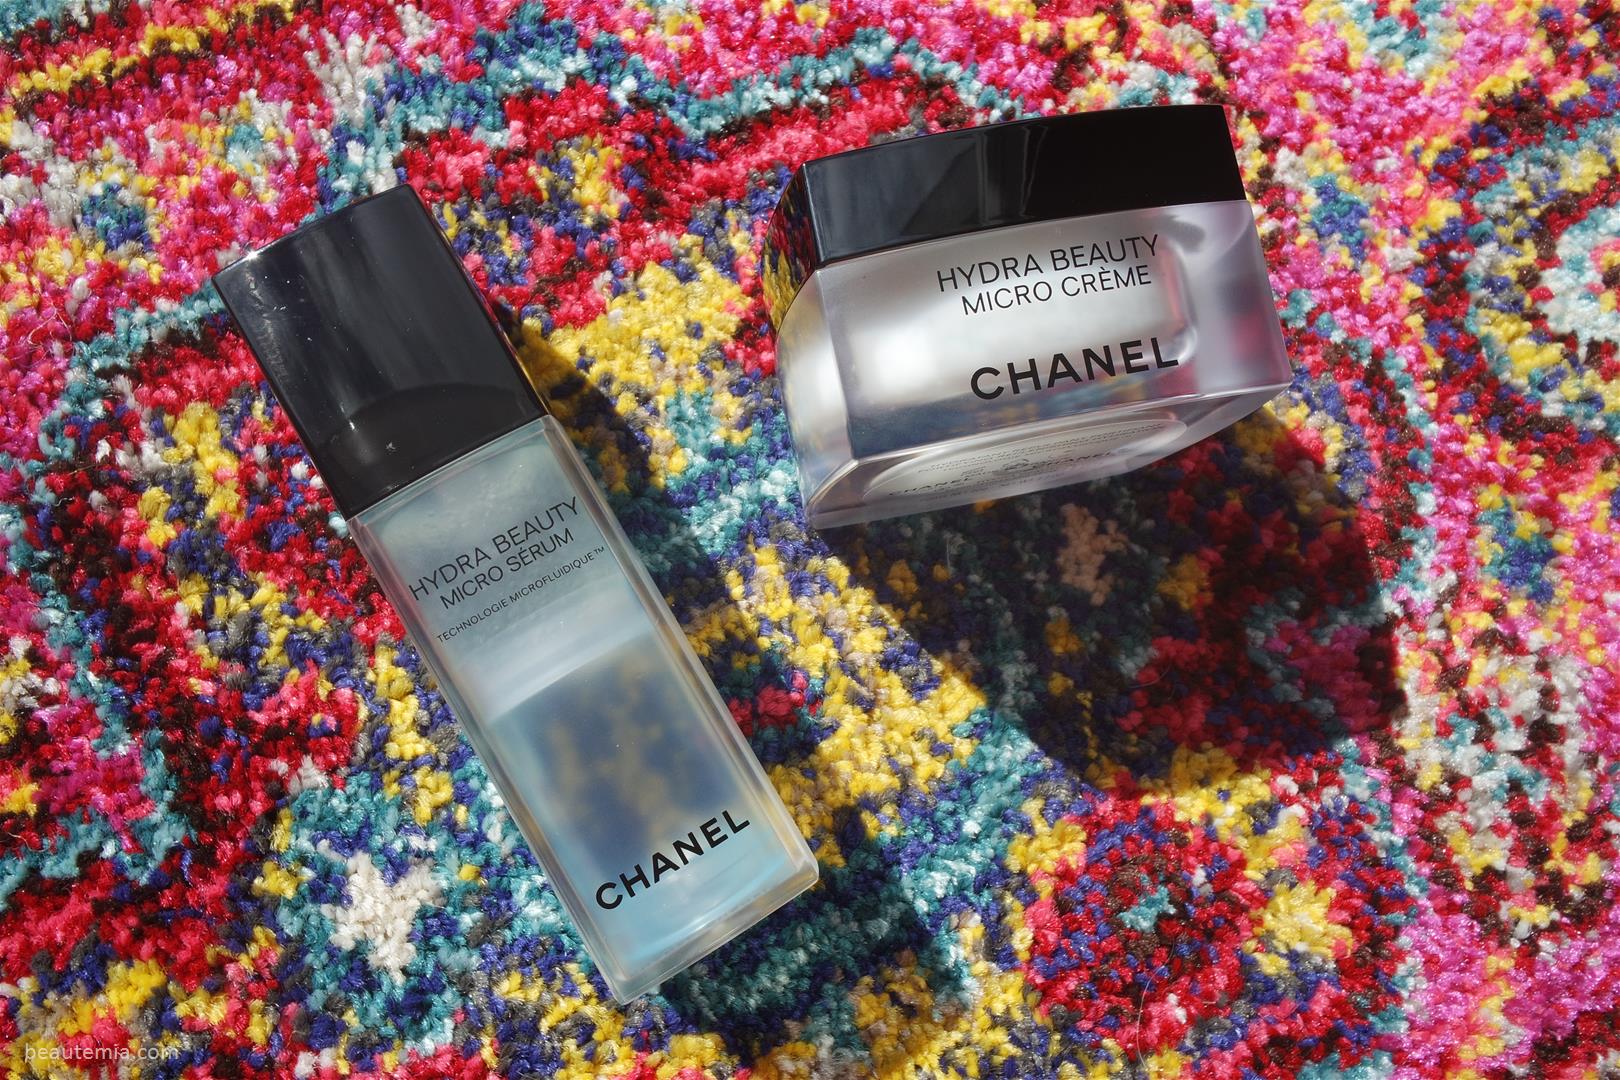 Chanel Hydra Beauty Micro Creme, Chanel Hydra Beauty Micro Serum, Chanel hydra beauty eye gel & Chanel hydra beauty mask